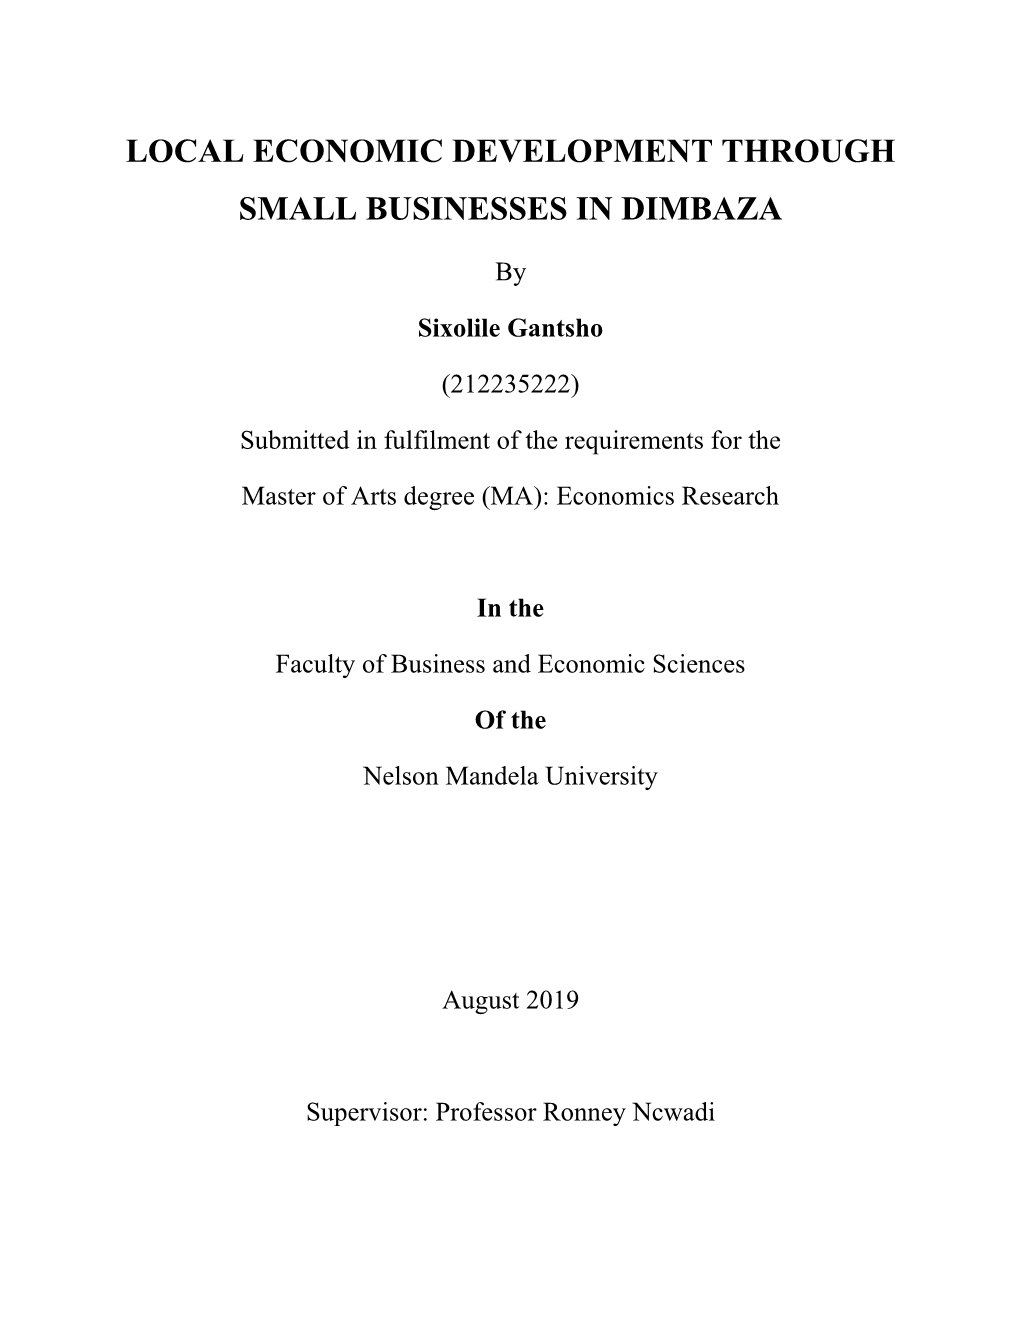 Local Economic Development Through Small Businesses in Dimbaza